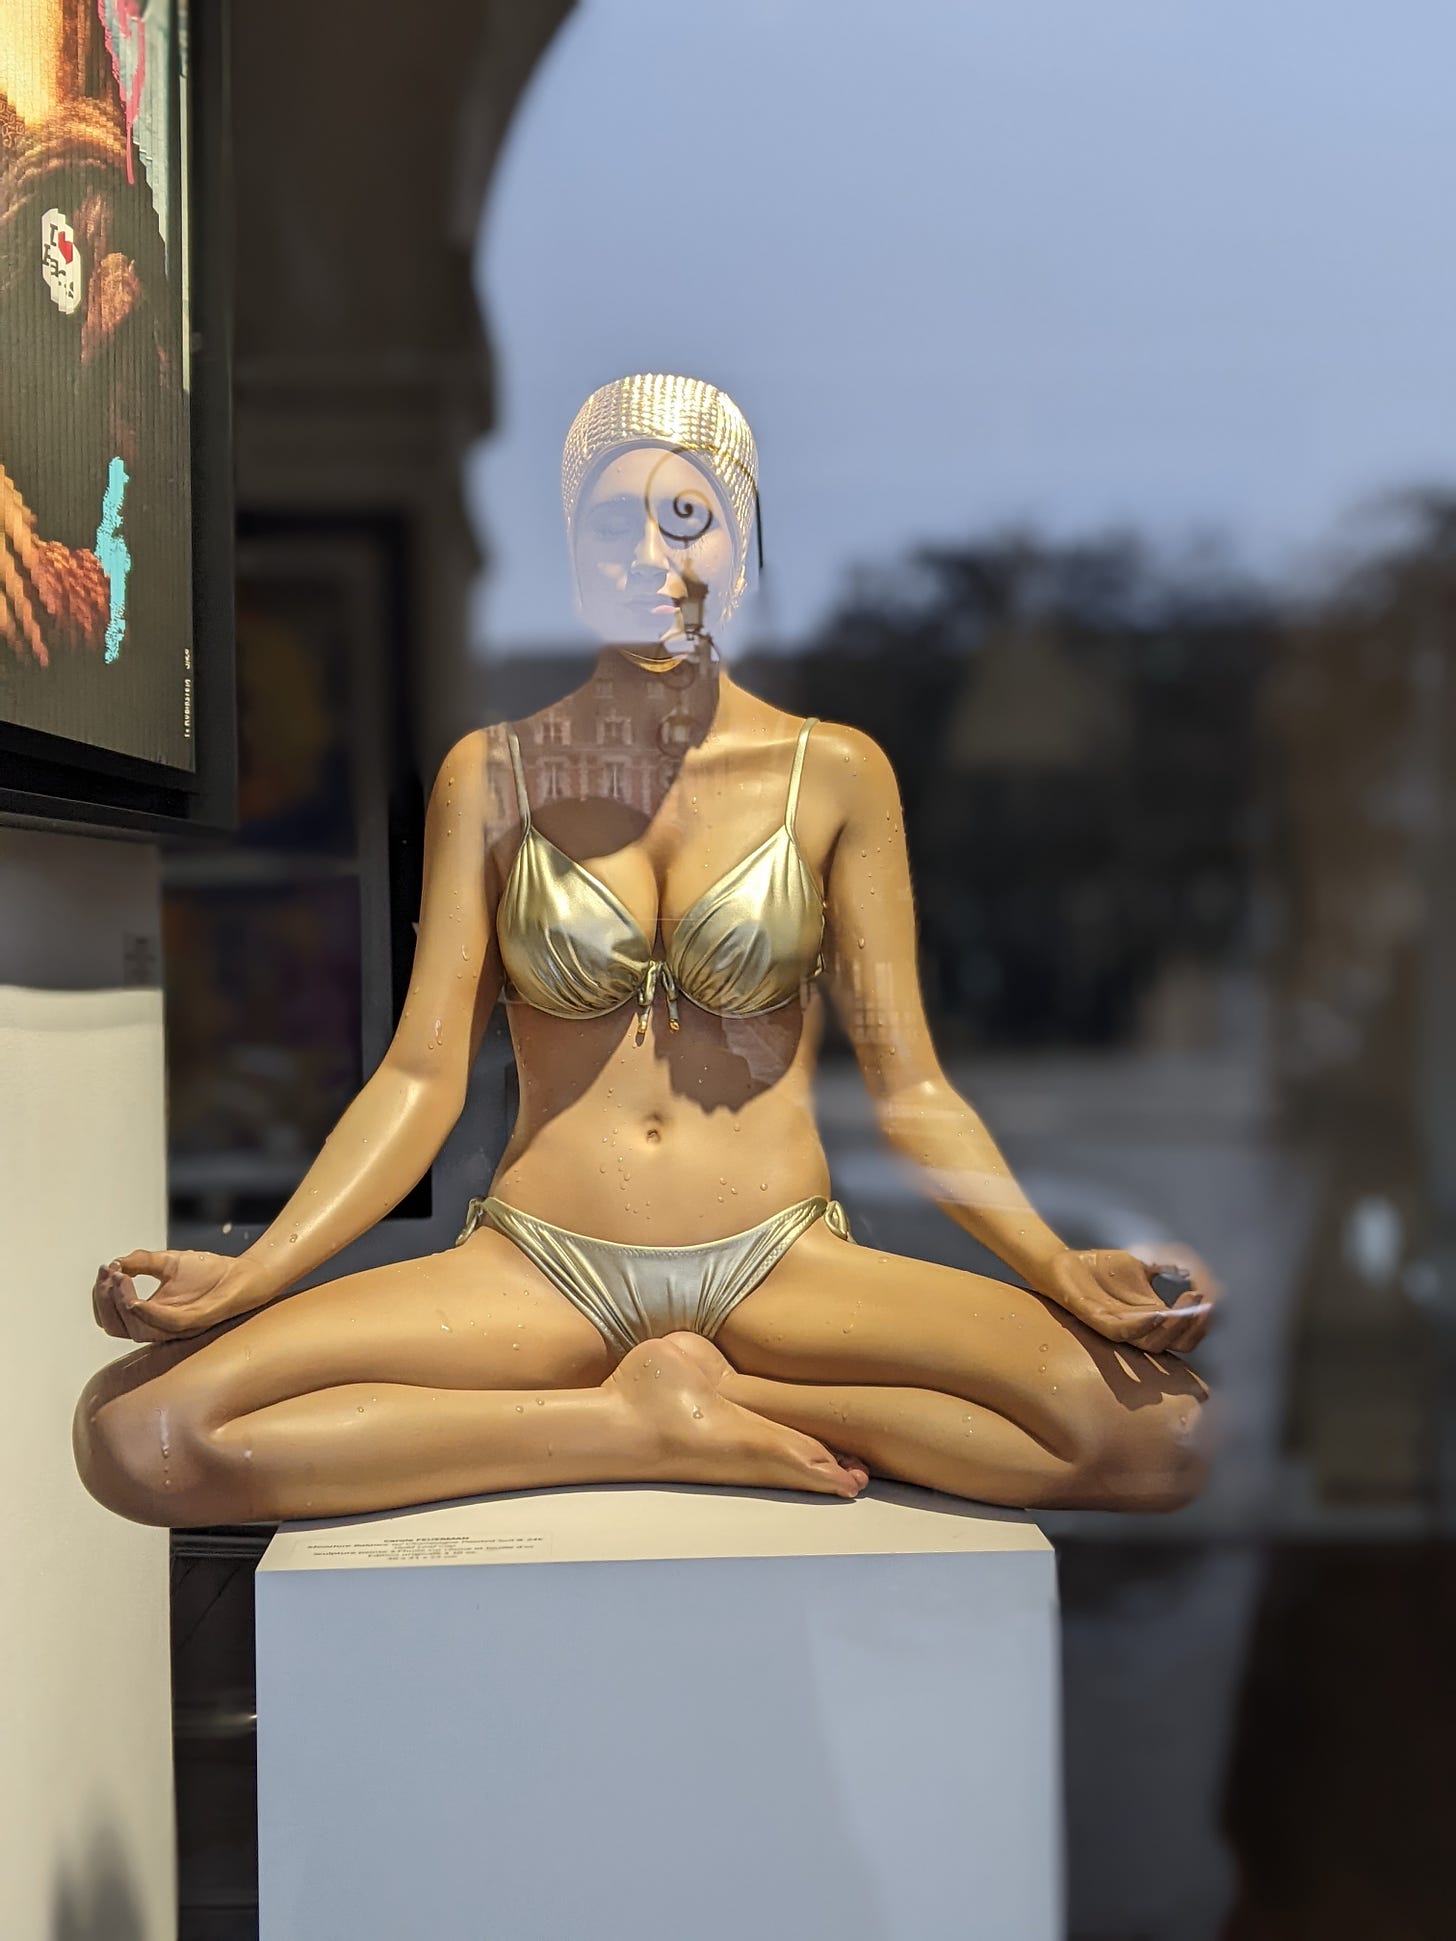 Yoga pose sculpture in a gallery window, place des Vosges, Paris, France